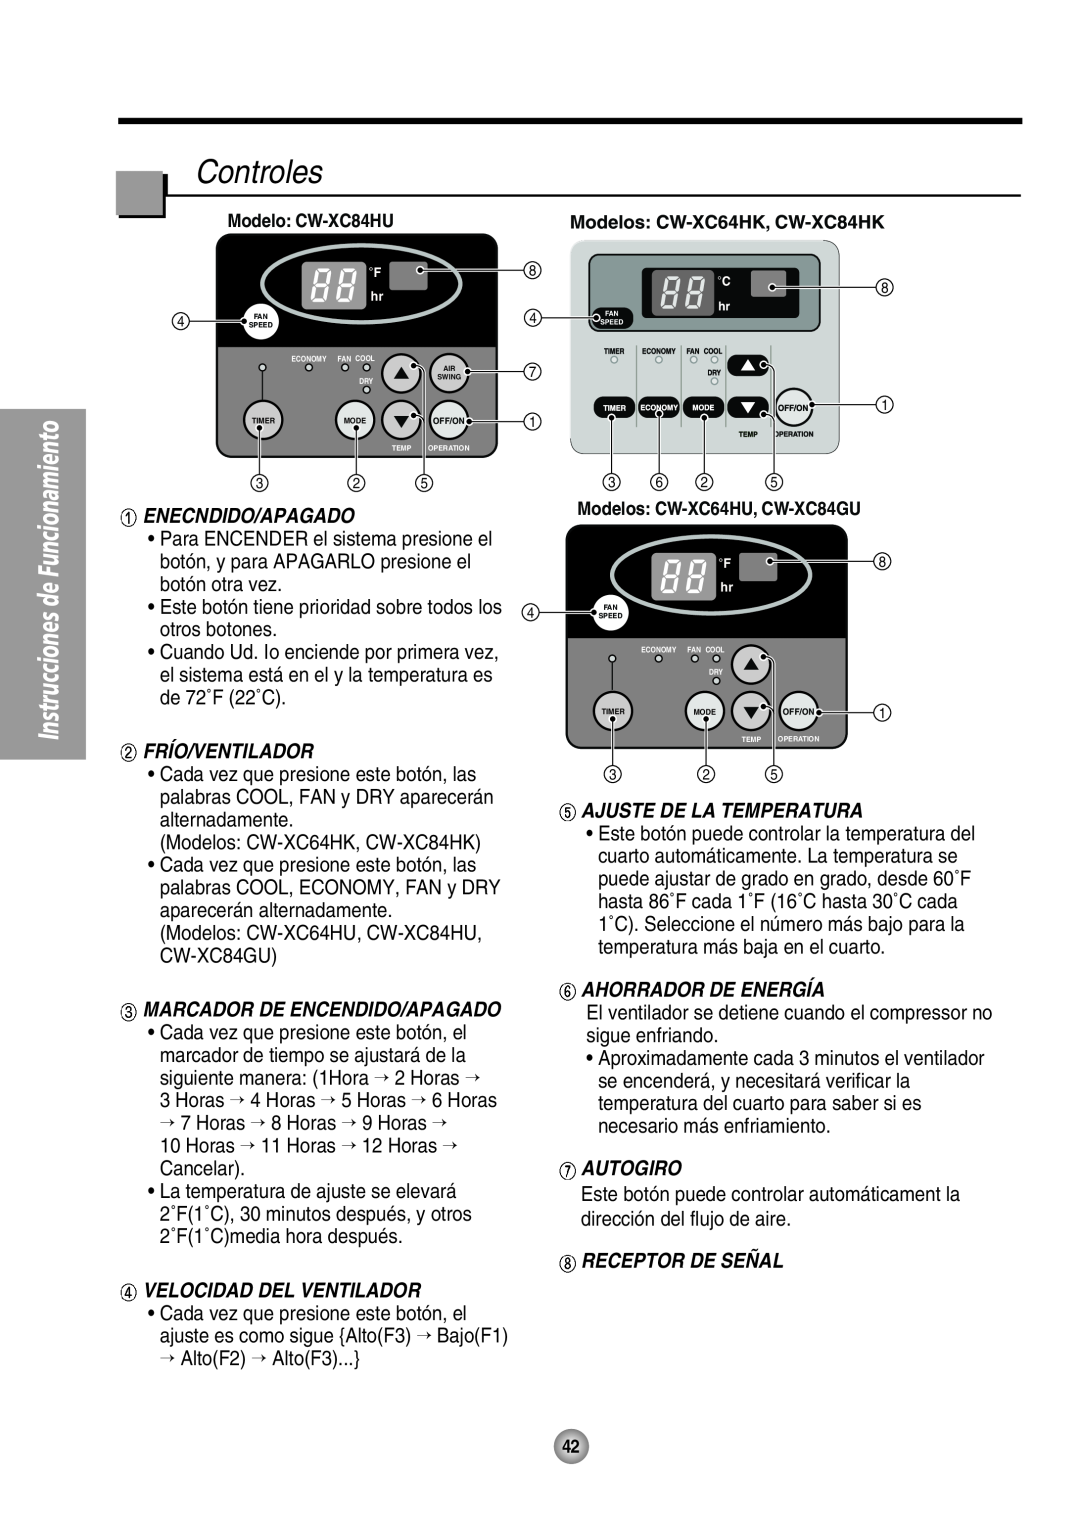 Panasonic CW-XC64HU manual Enecndido/Apagado, Frío/Ventilador, Velocidad Del Ventilador, Ajuste De La Temperatura, Autogiro 